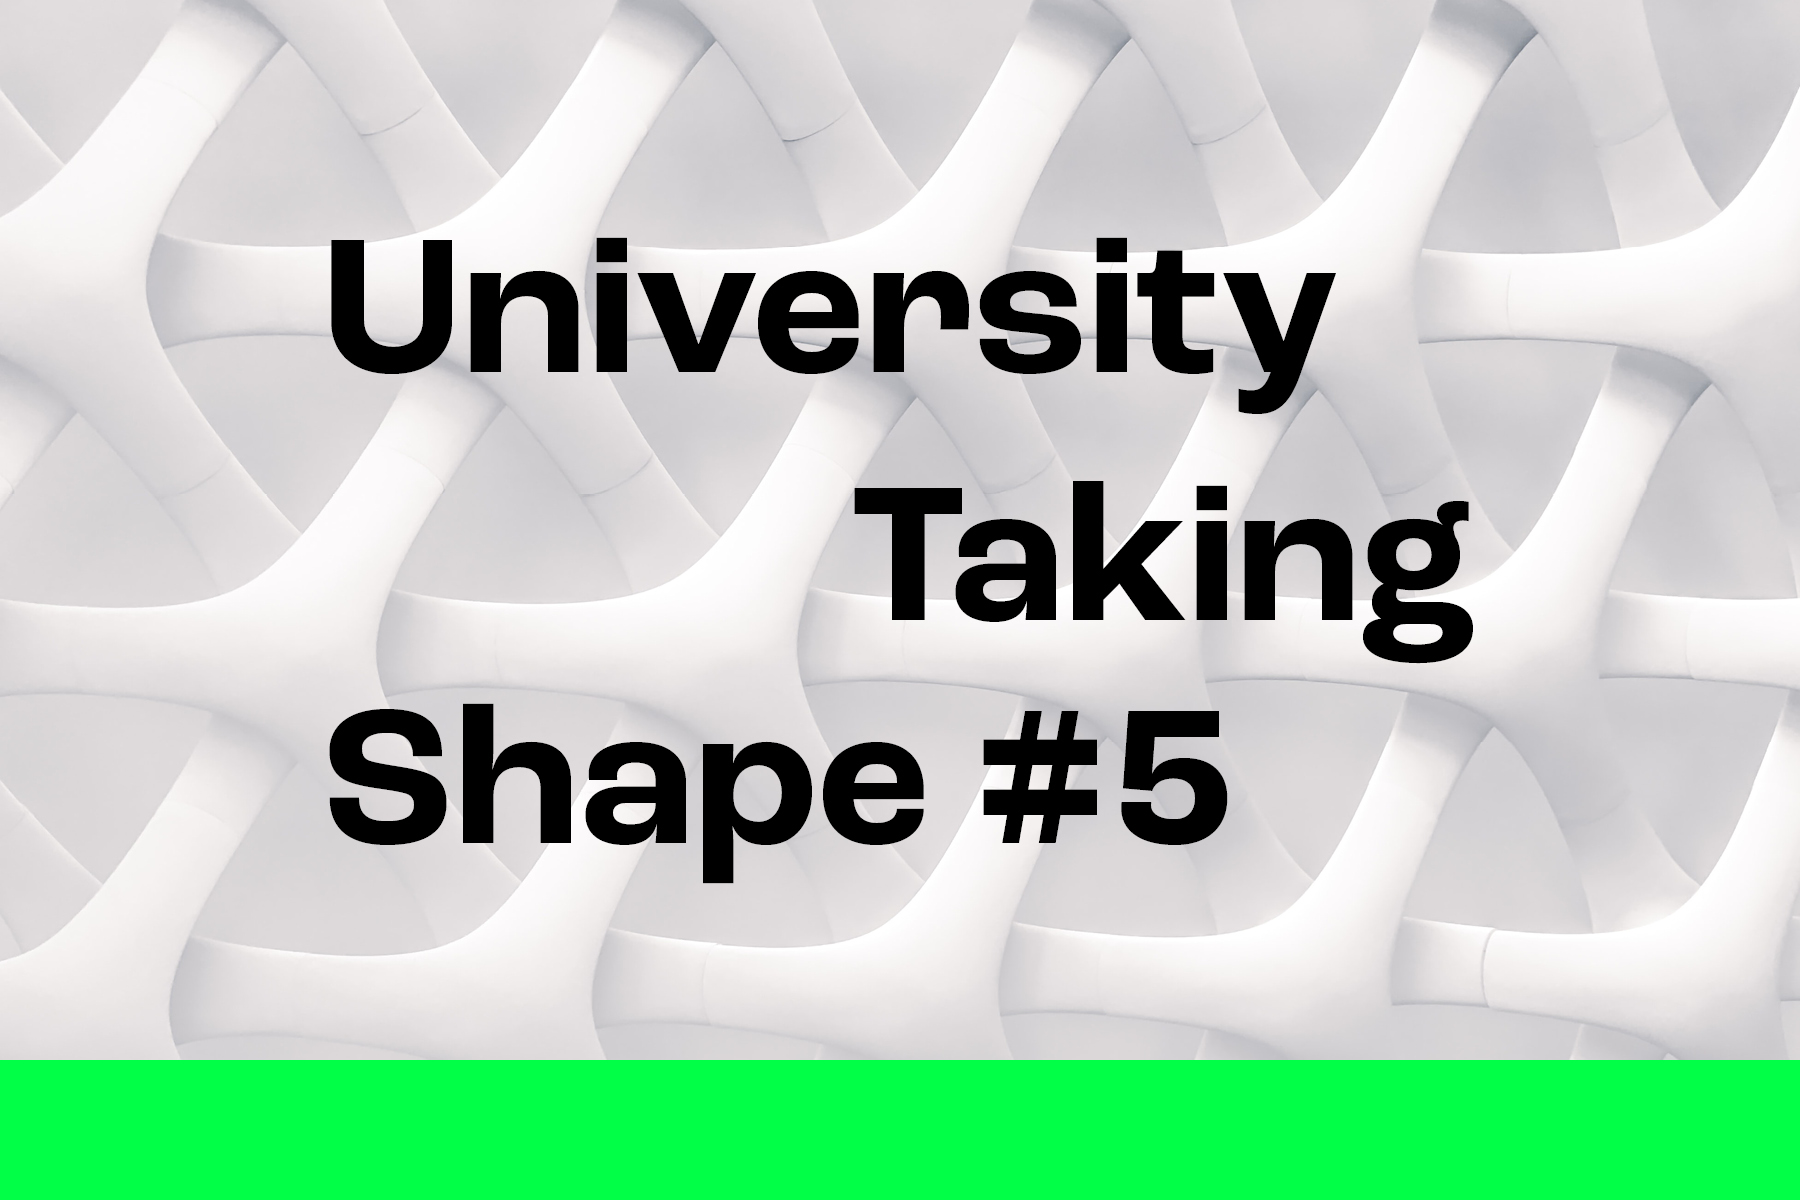 University-taking-shape-5-1-1800x1200